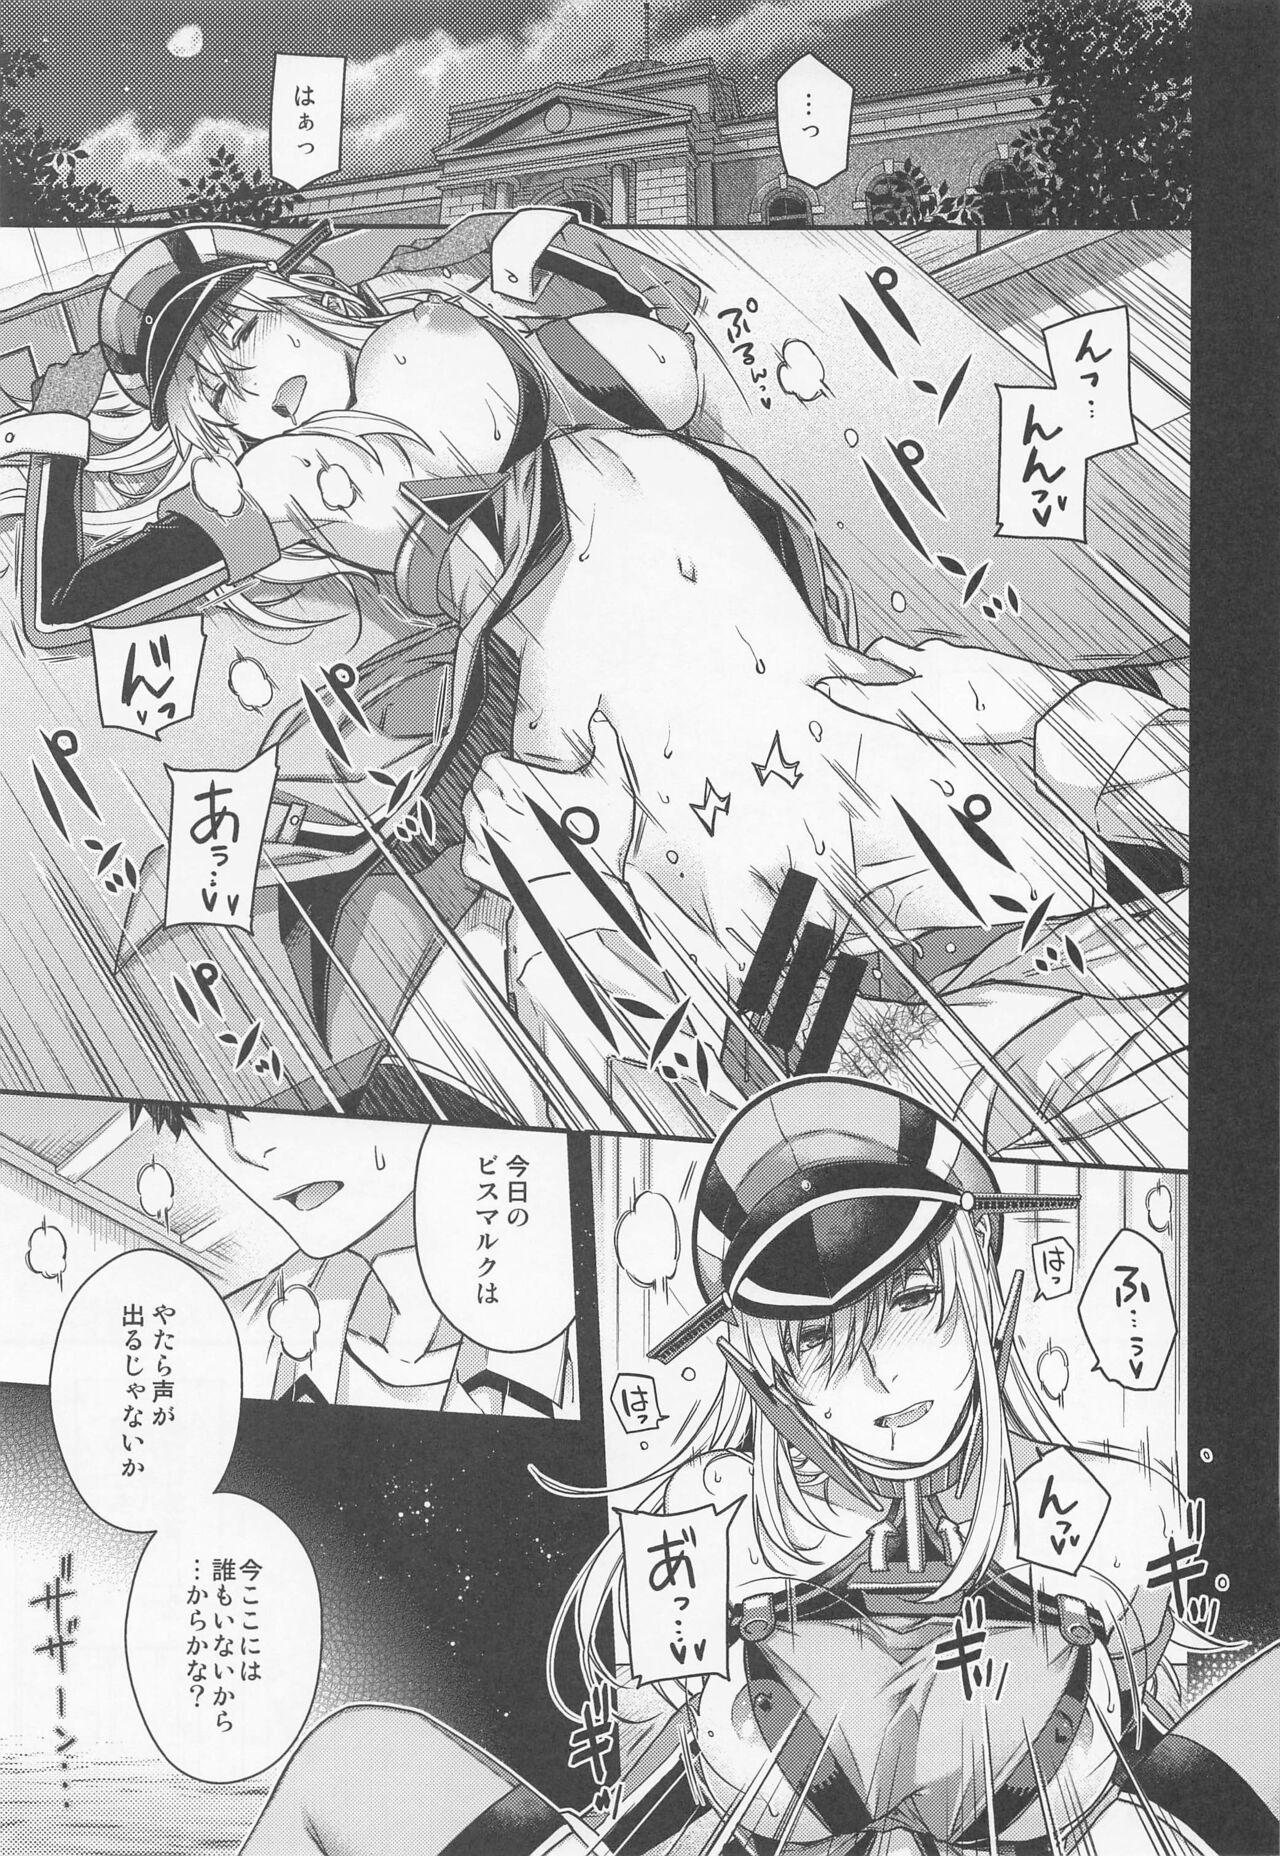 Cams Admiral! 9 - Kantai collection Masterbation - Page 4